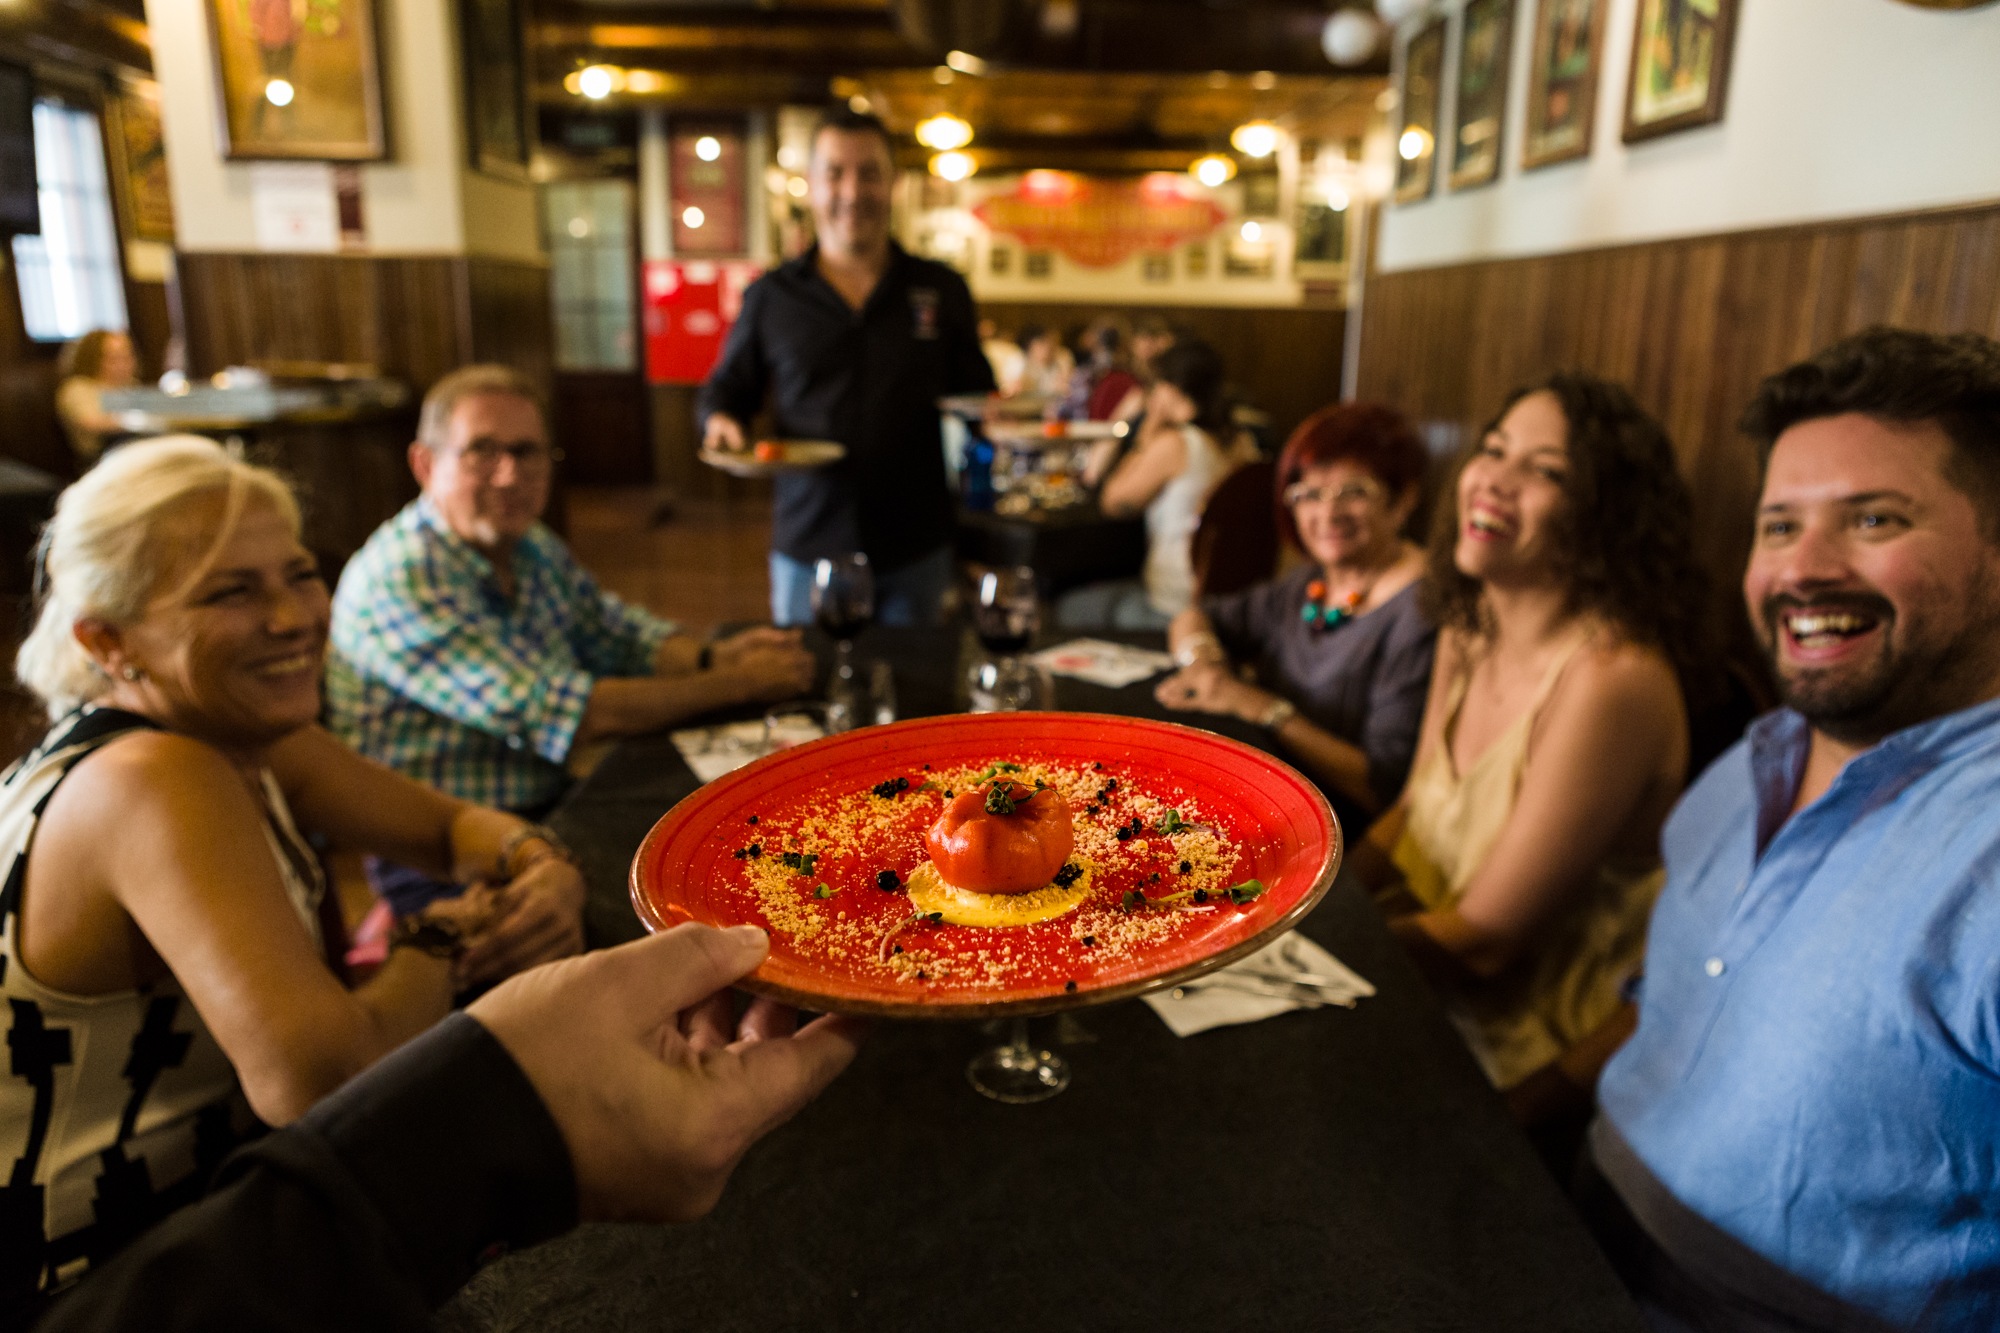 Restaurante Mazmorra by Macera. Trampantojo de tomate: brandada de bacalao con gelatina de piquillos y tierra de frutos secos con perlas de Módena.